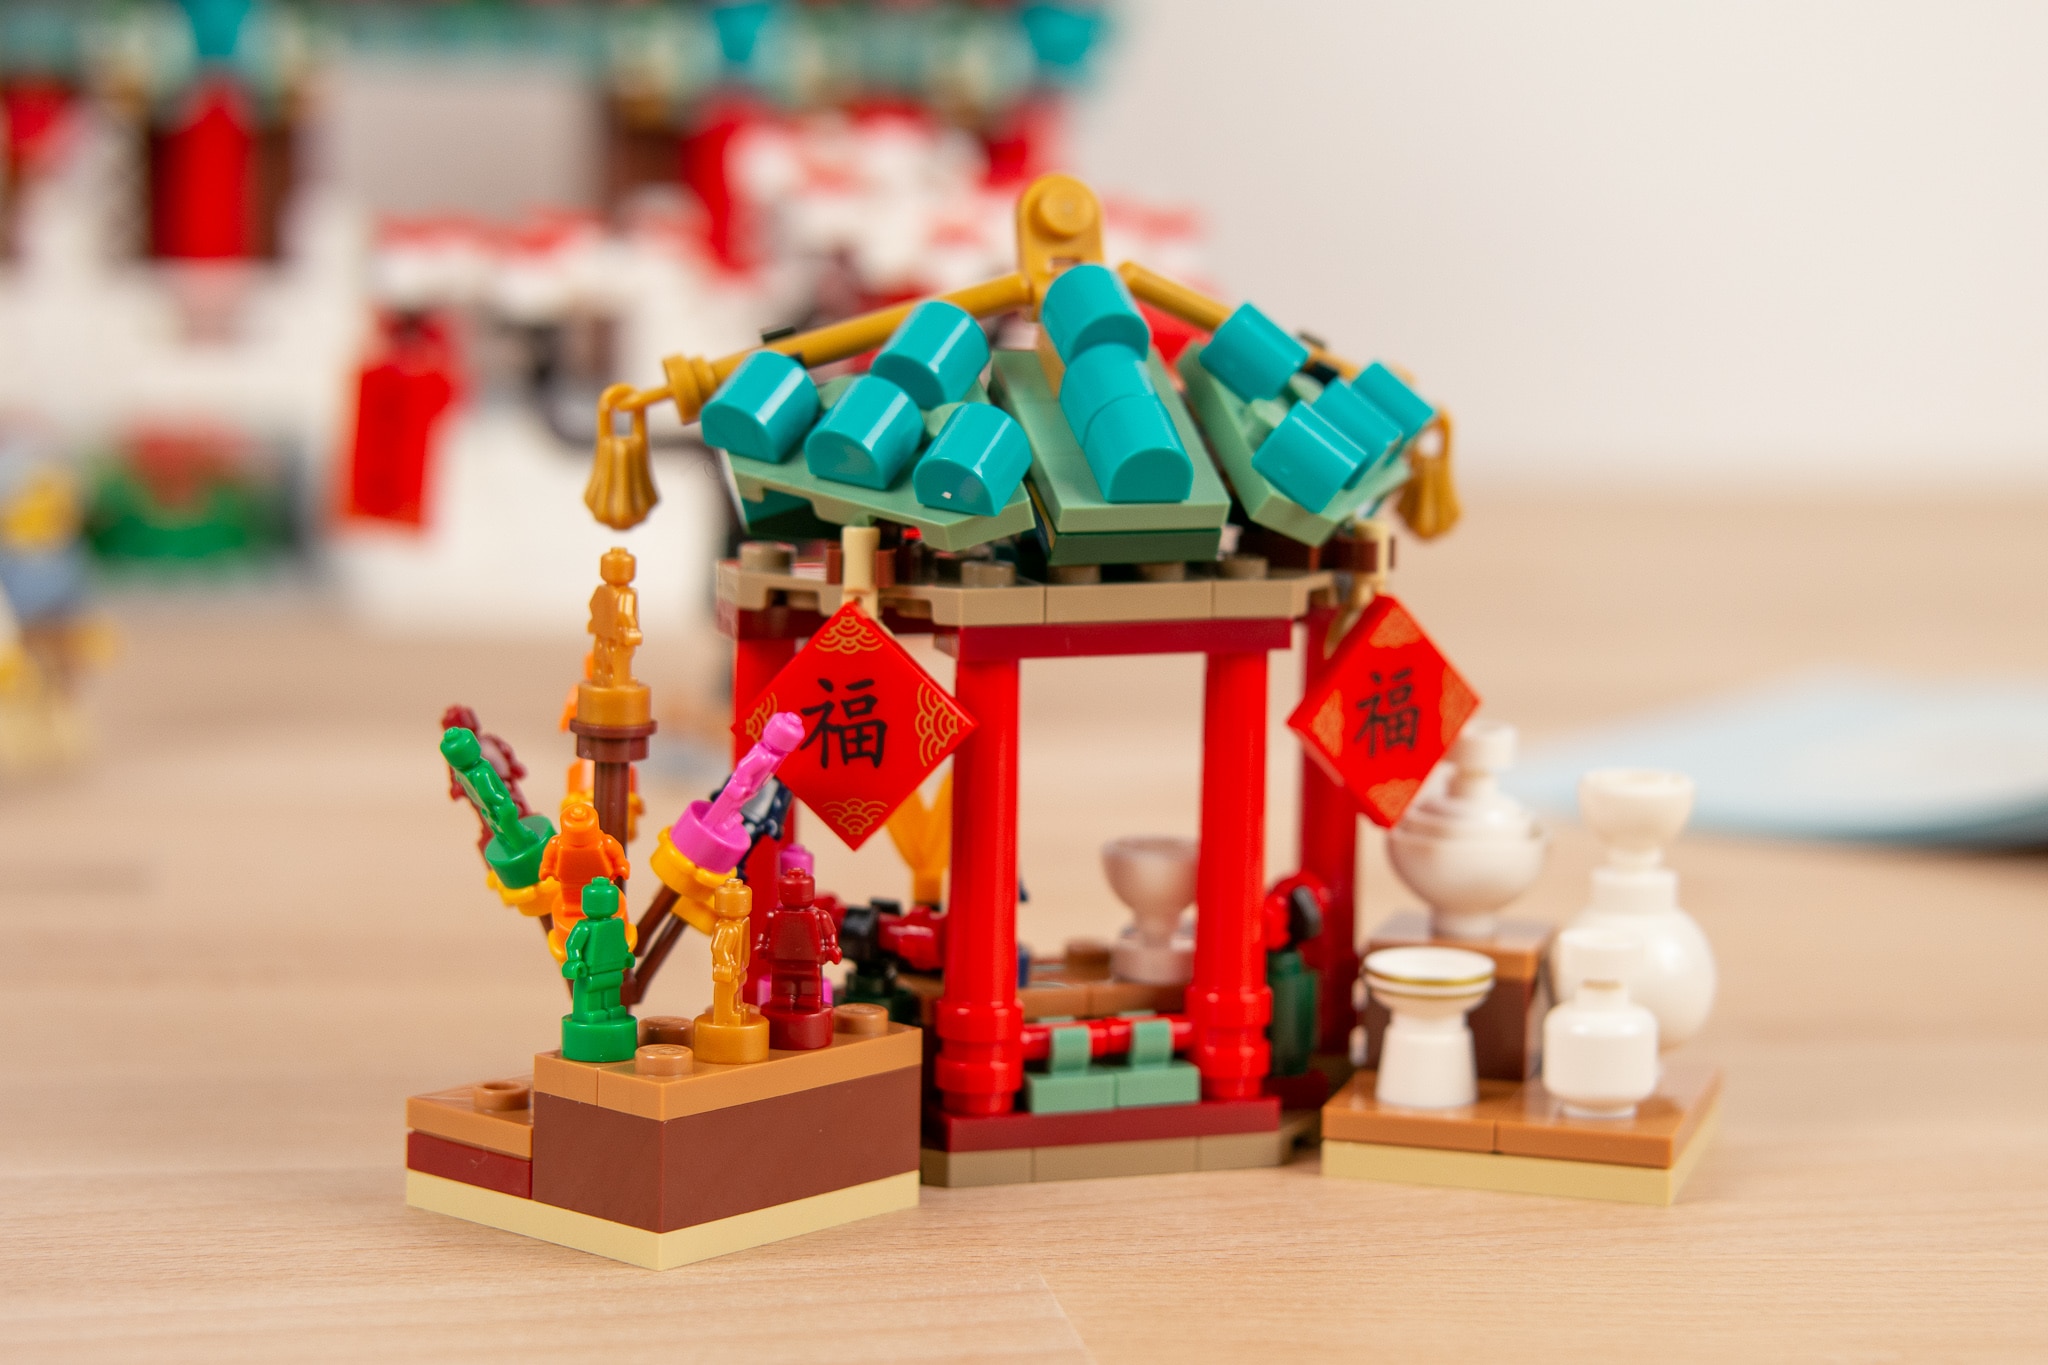 LEGO 80105 Tempelmarkt Zum Chinesischen Neujahrsfest Review (24)